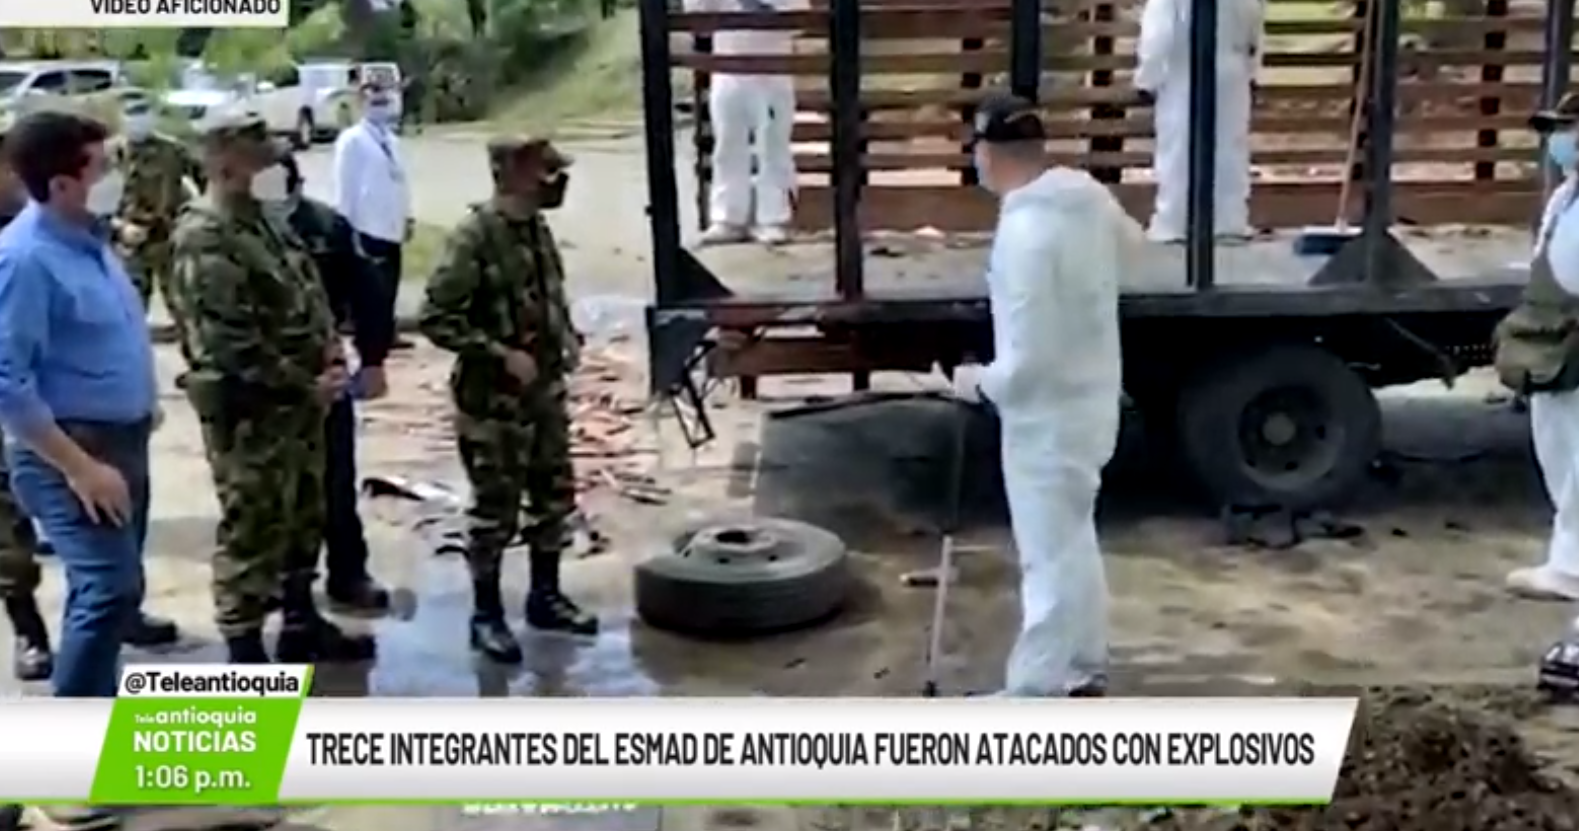 Trece integrantes del Esmad en Antioquia fueron atacados con explosivos